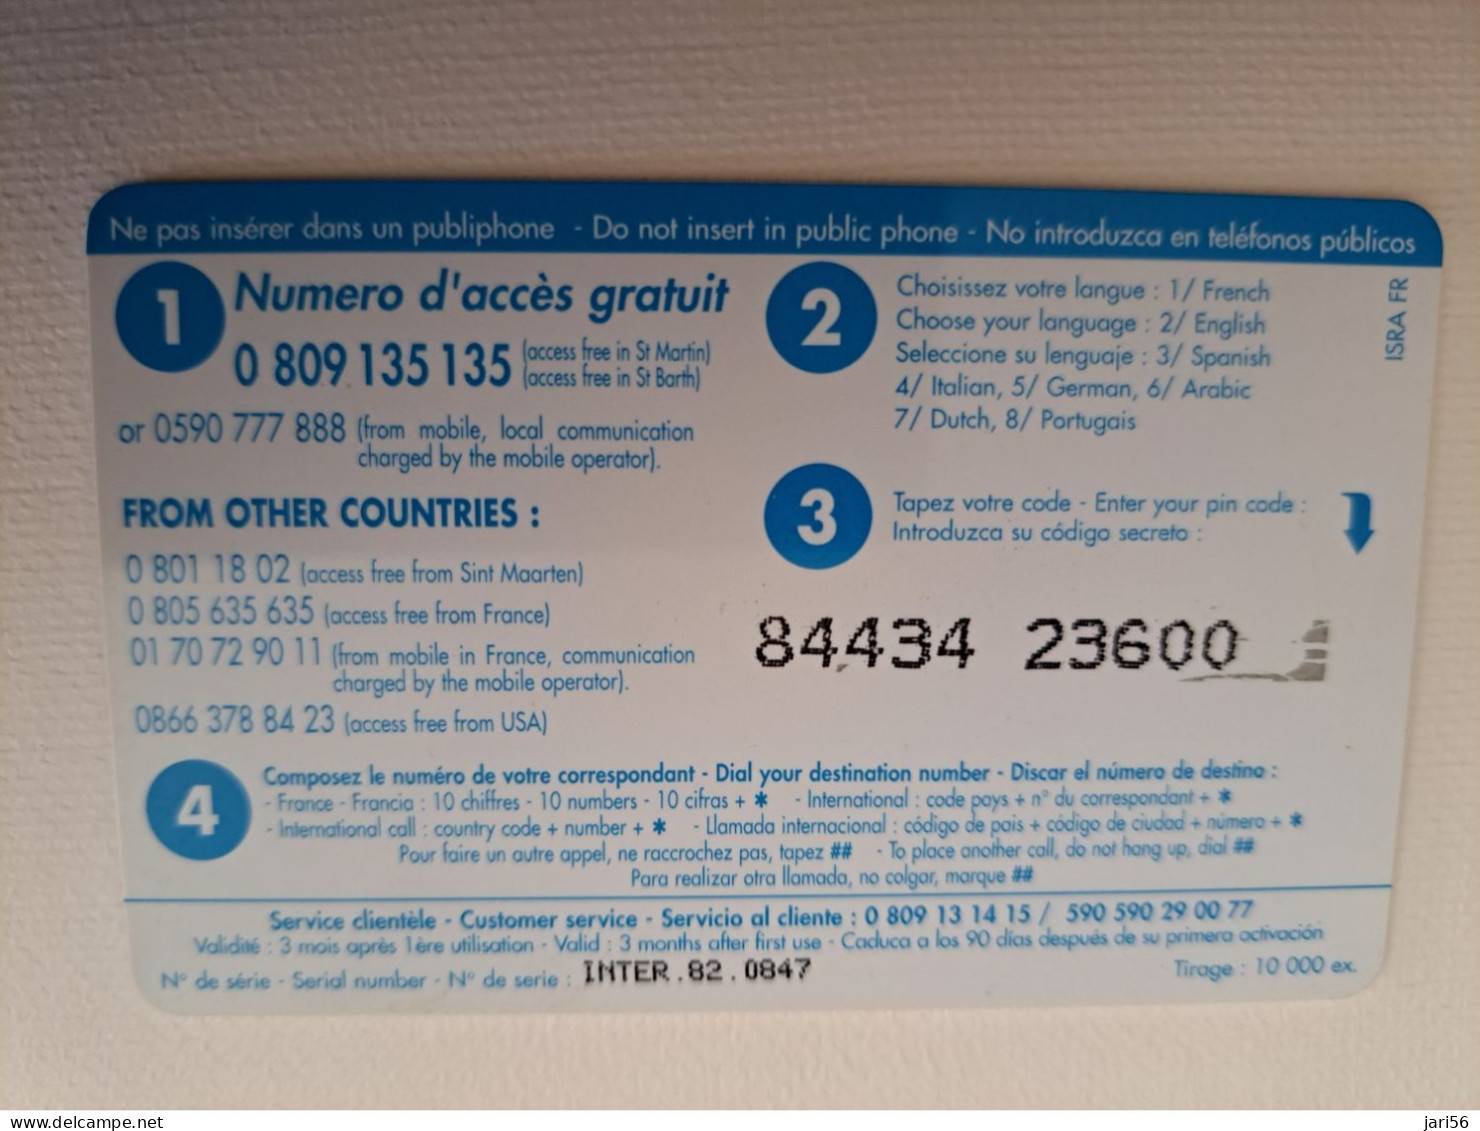 ST MARTIN / INTERCARD  3 EURO    / CASE AGREEMENT       NO 082  Fine Used Card    ** 15140** - Antillen (Französische)